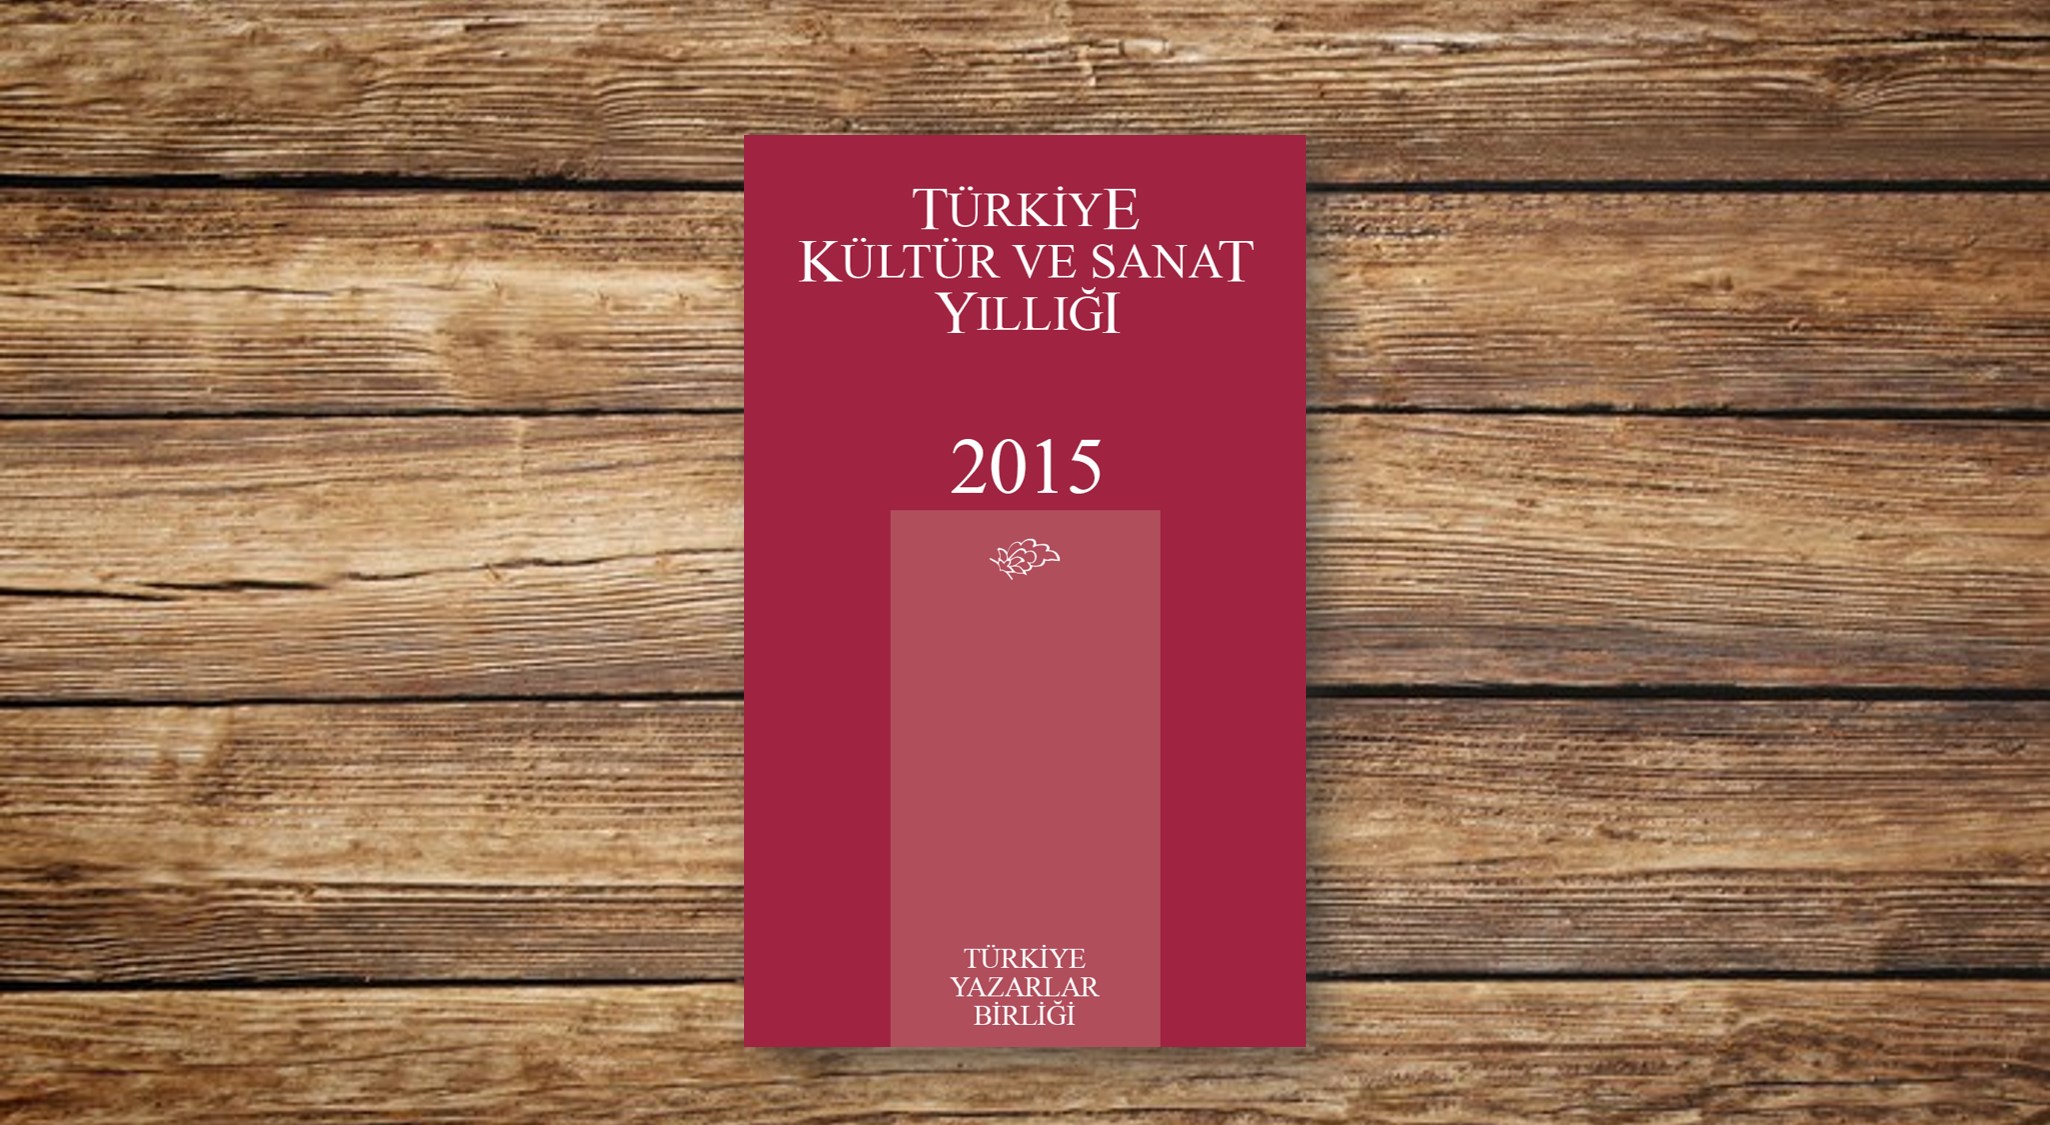 Türkiye Kültür ve Sanat Yıllığı 2015